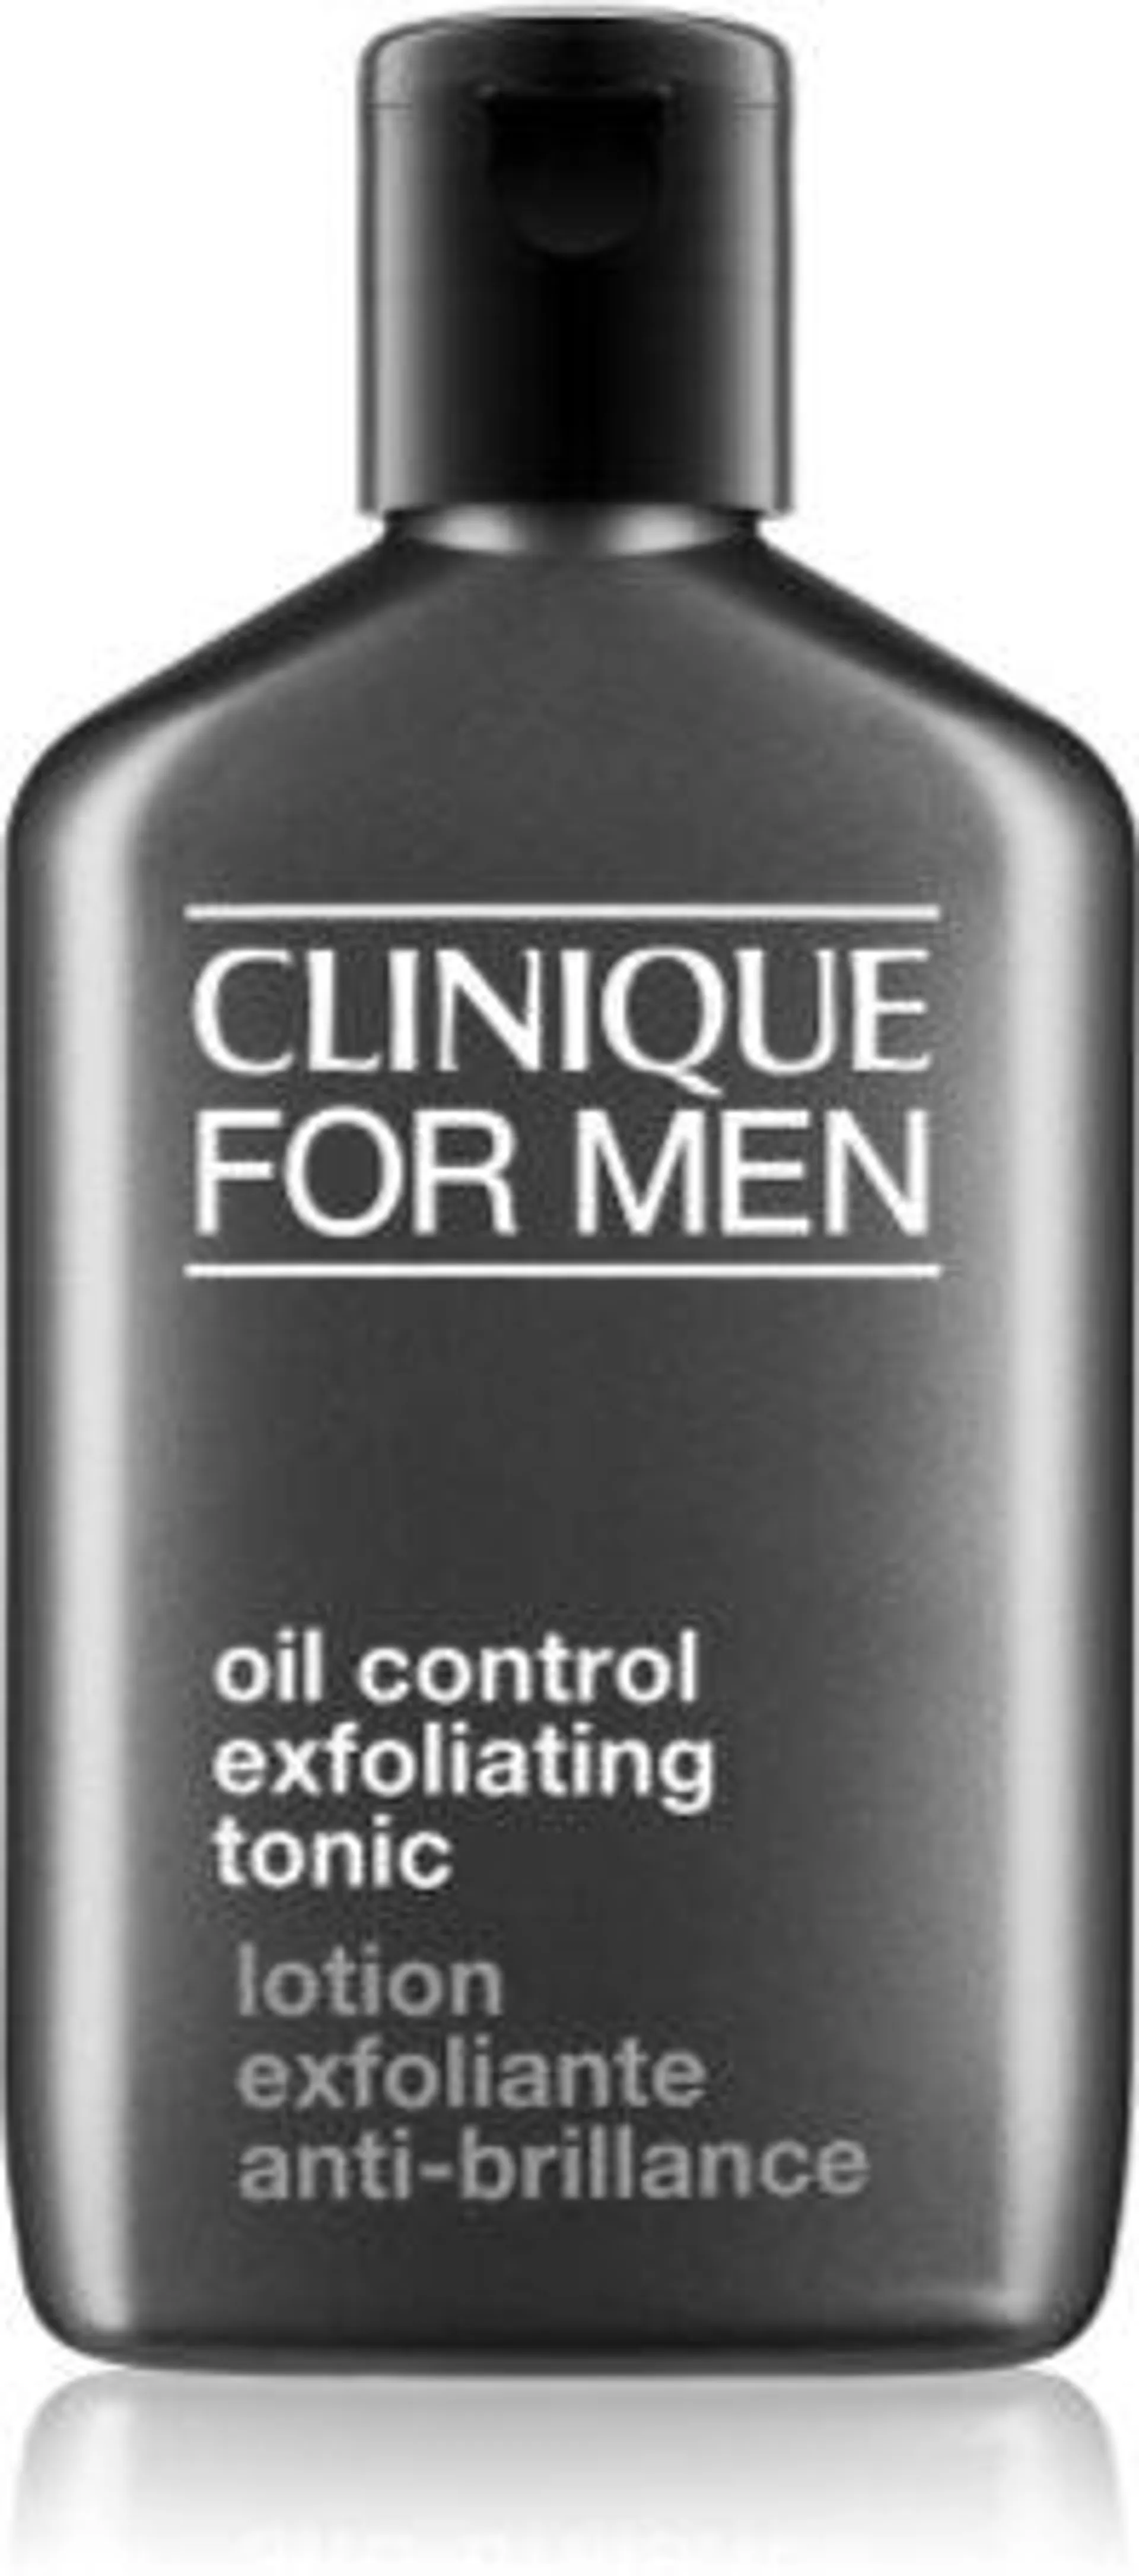 For Men™ Oil Control Exfoliating Tonic